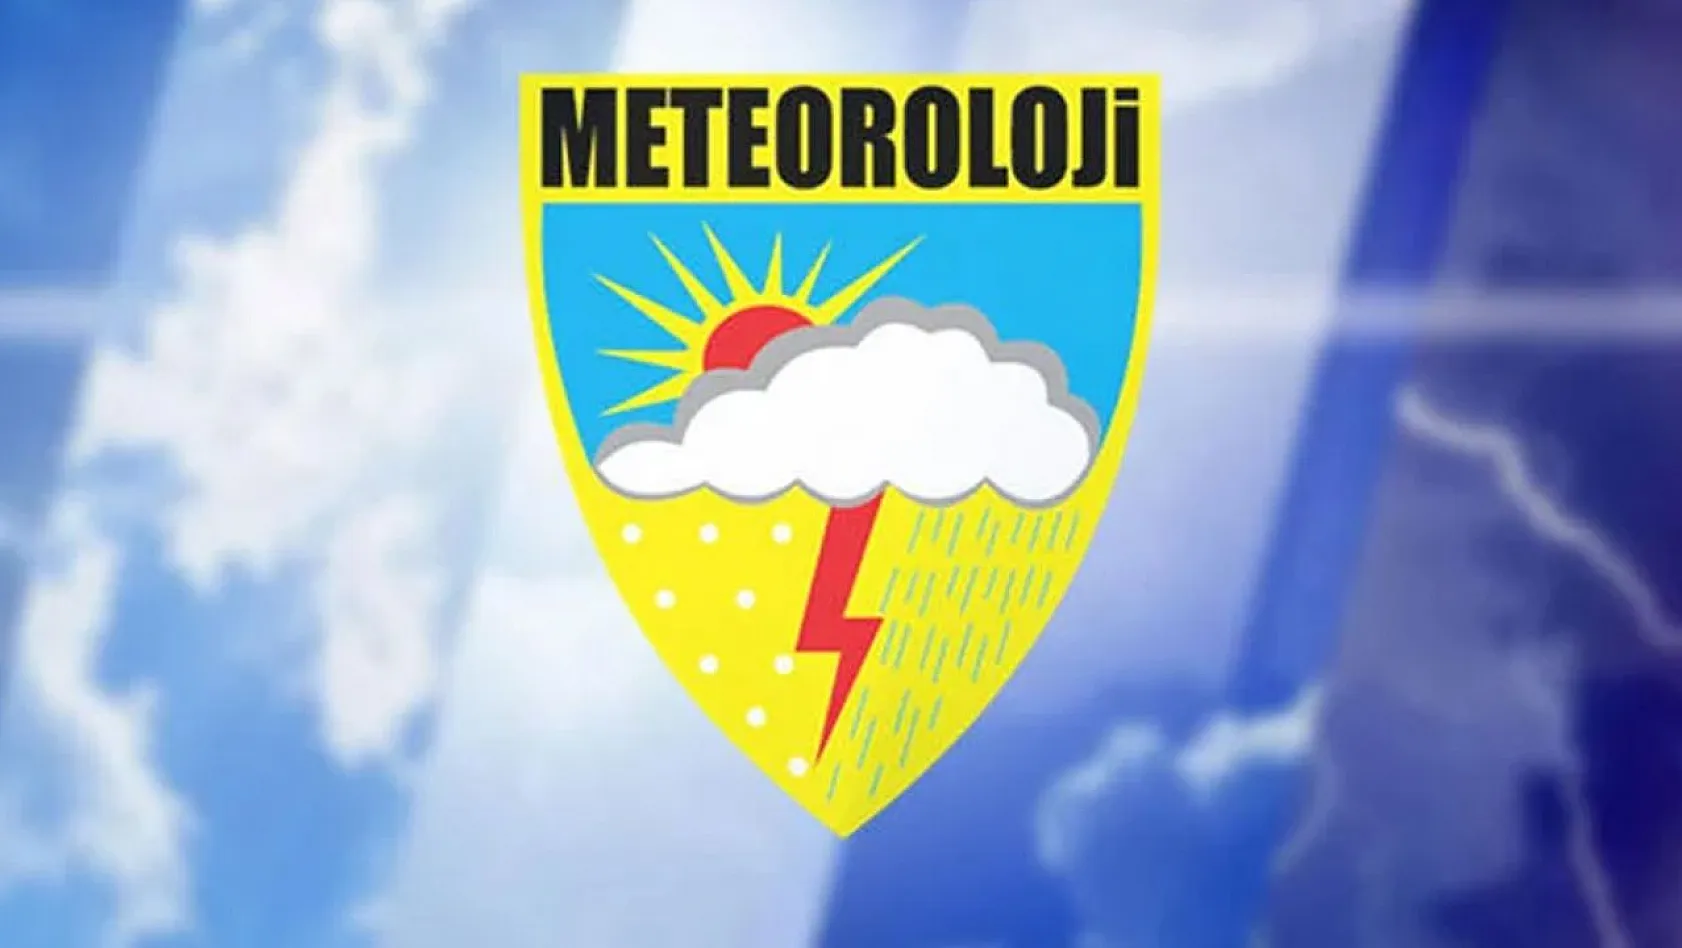 Meteoroloji 13. Bölge Müdürlüğü Elazığ'da Personel Alacak